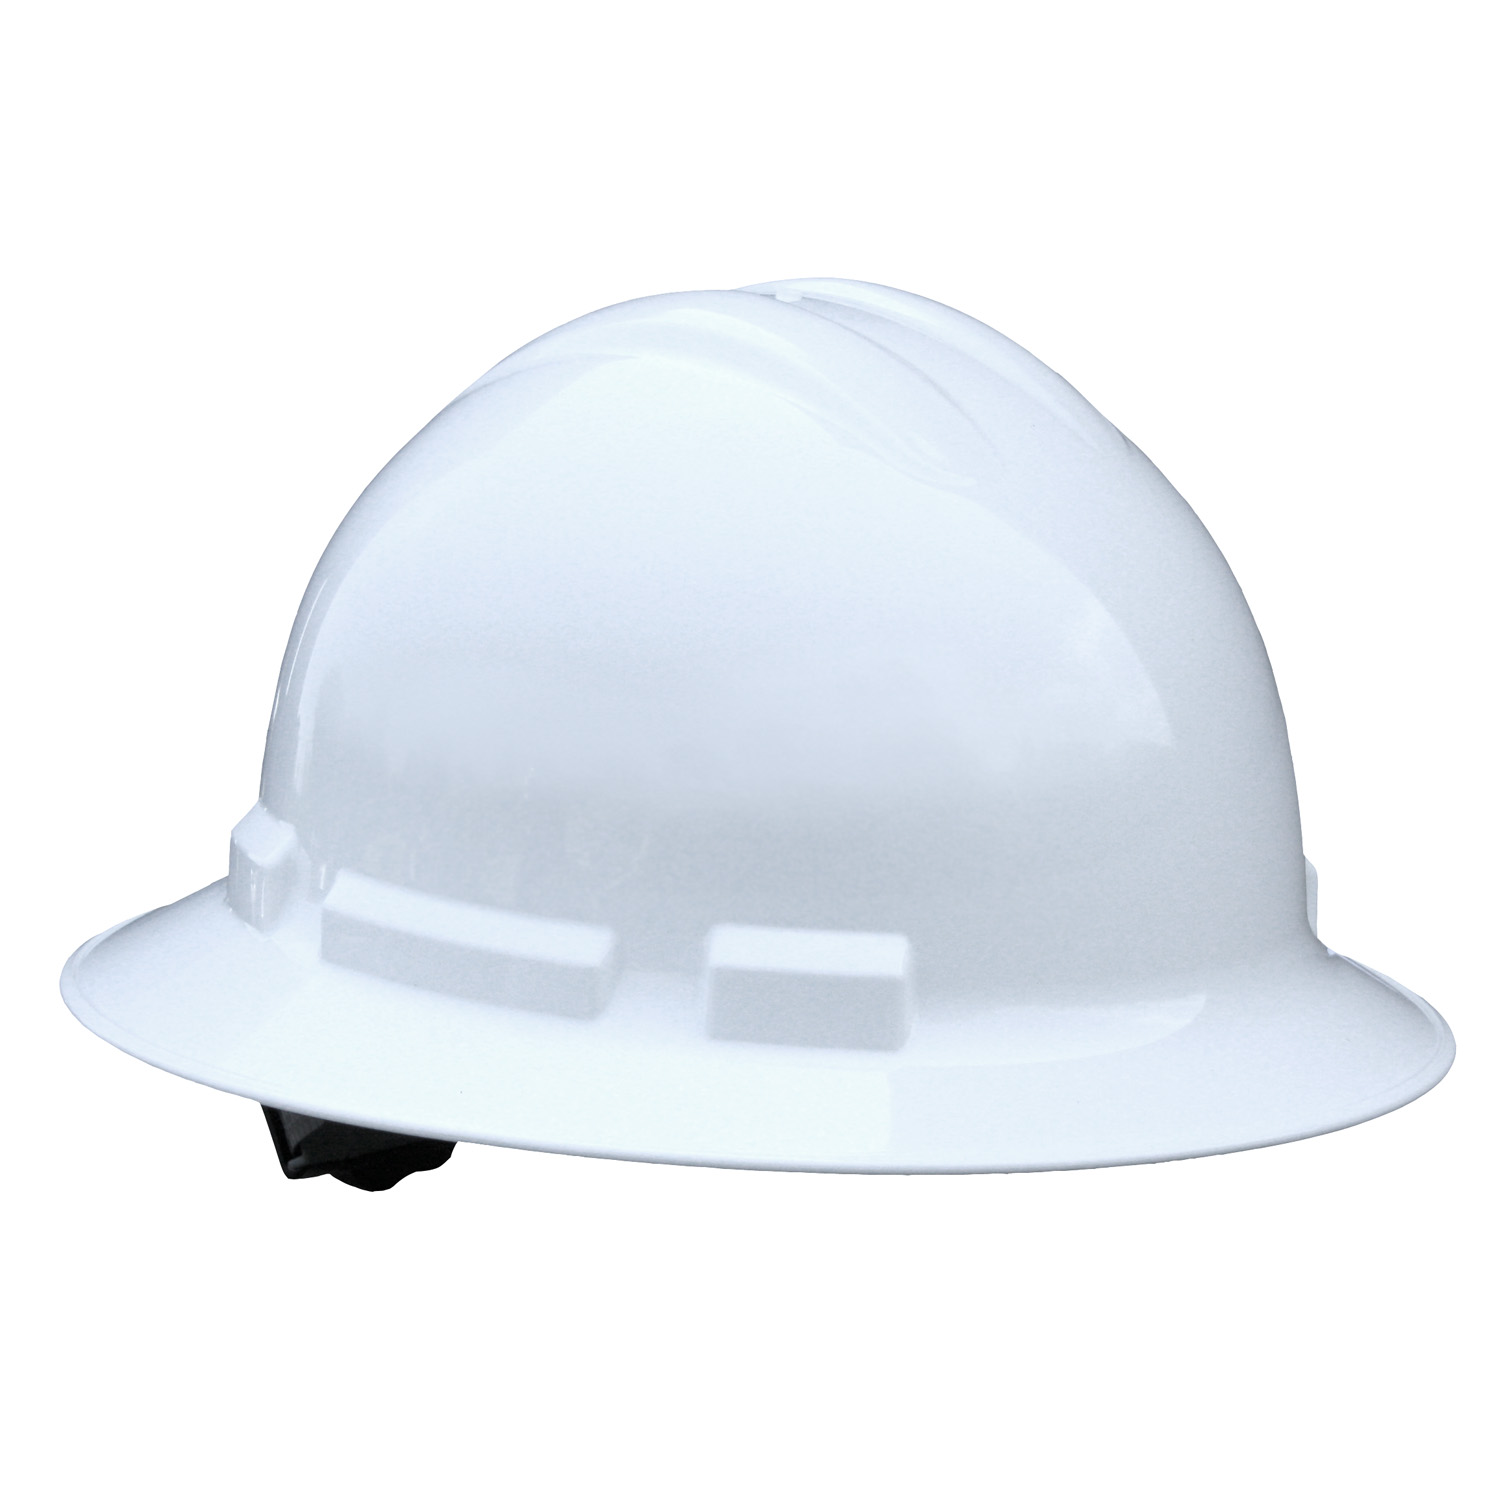 Quartz™ Full Brim 6 Point Pinlock Hard Hat - White